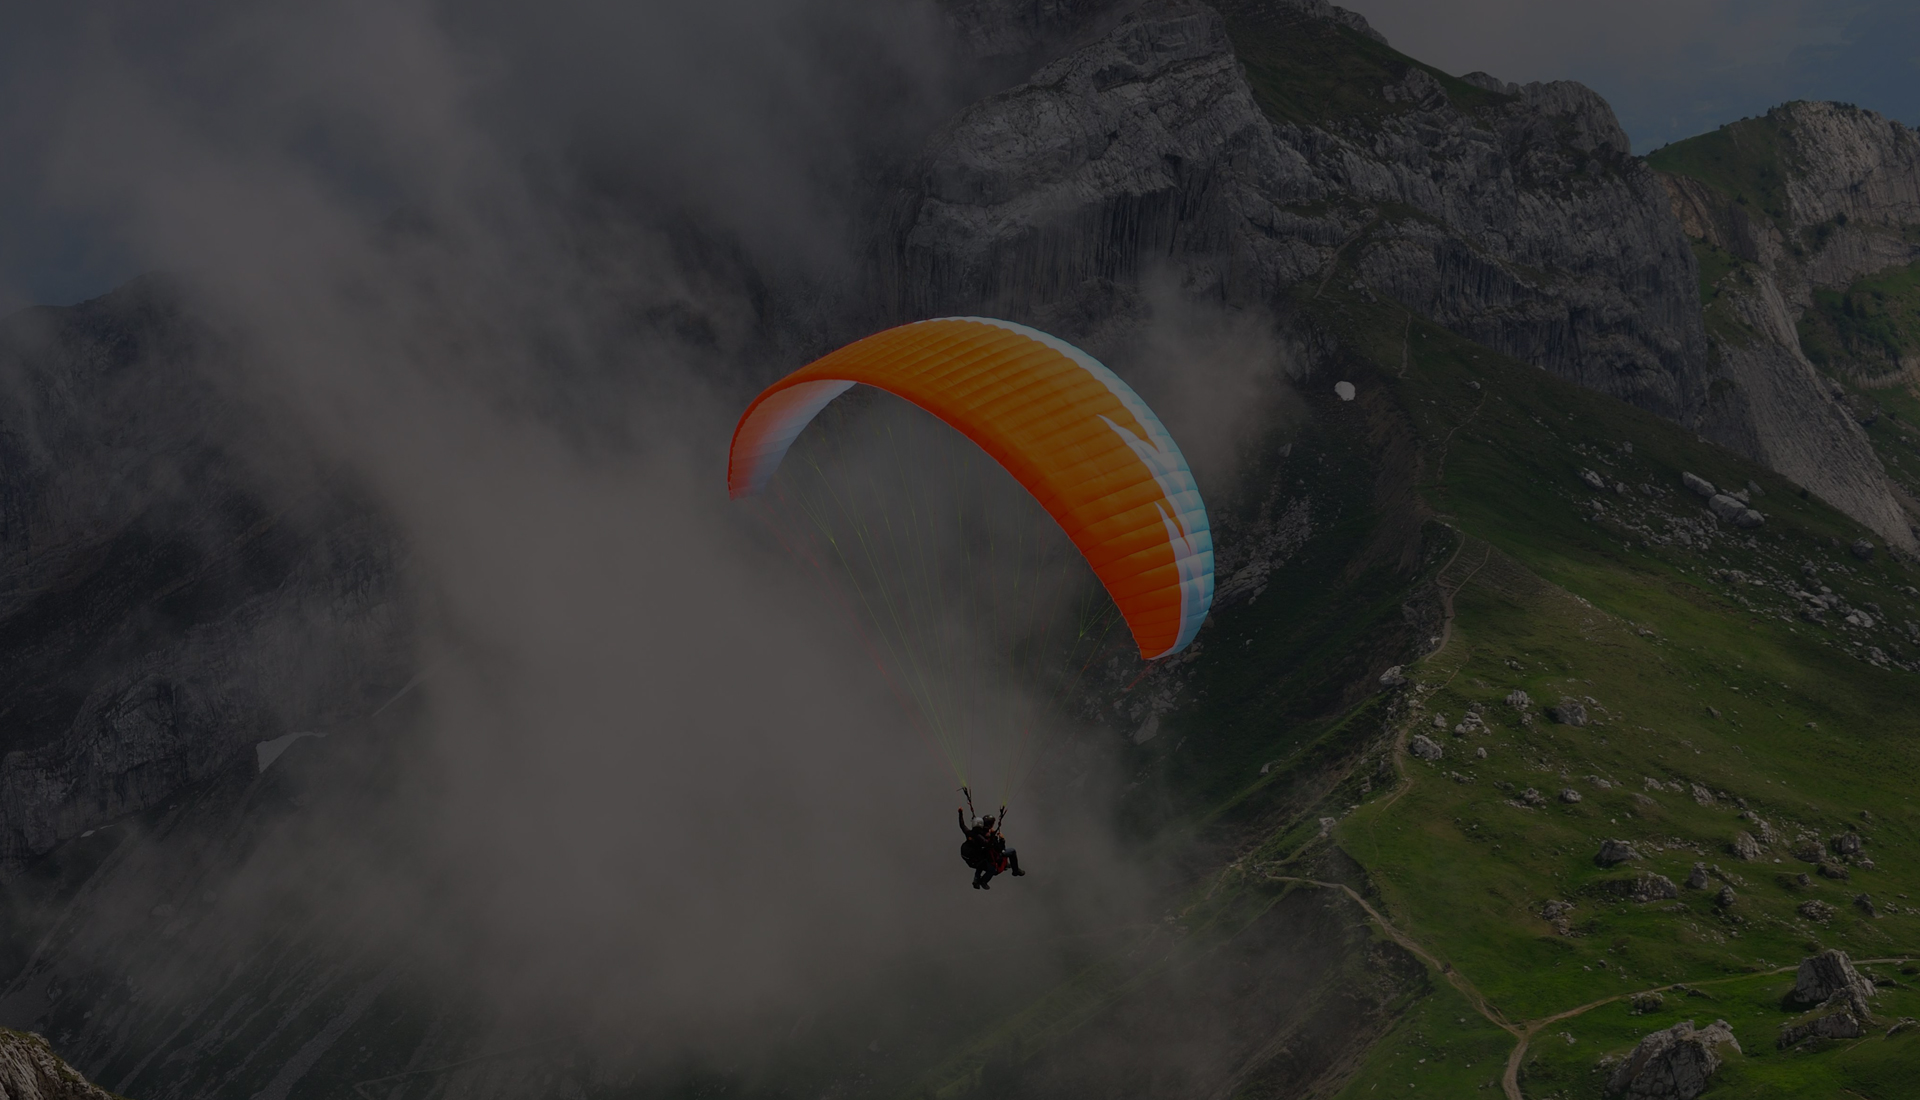 Bir Billing paragliding adventure